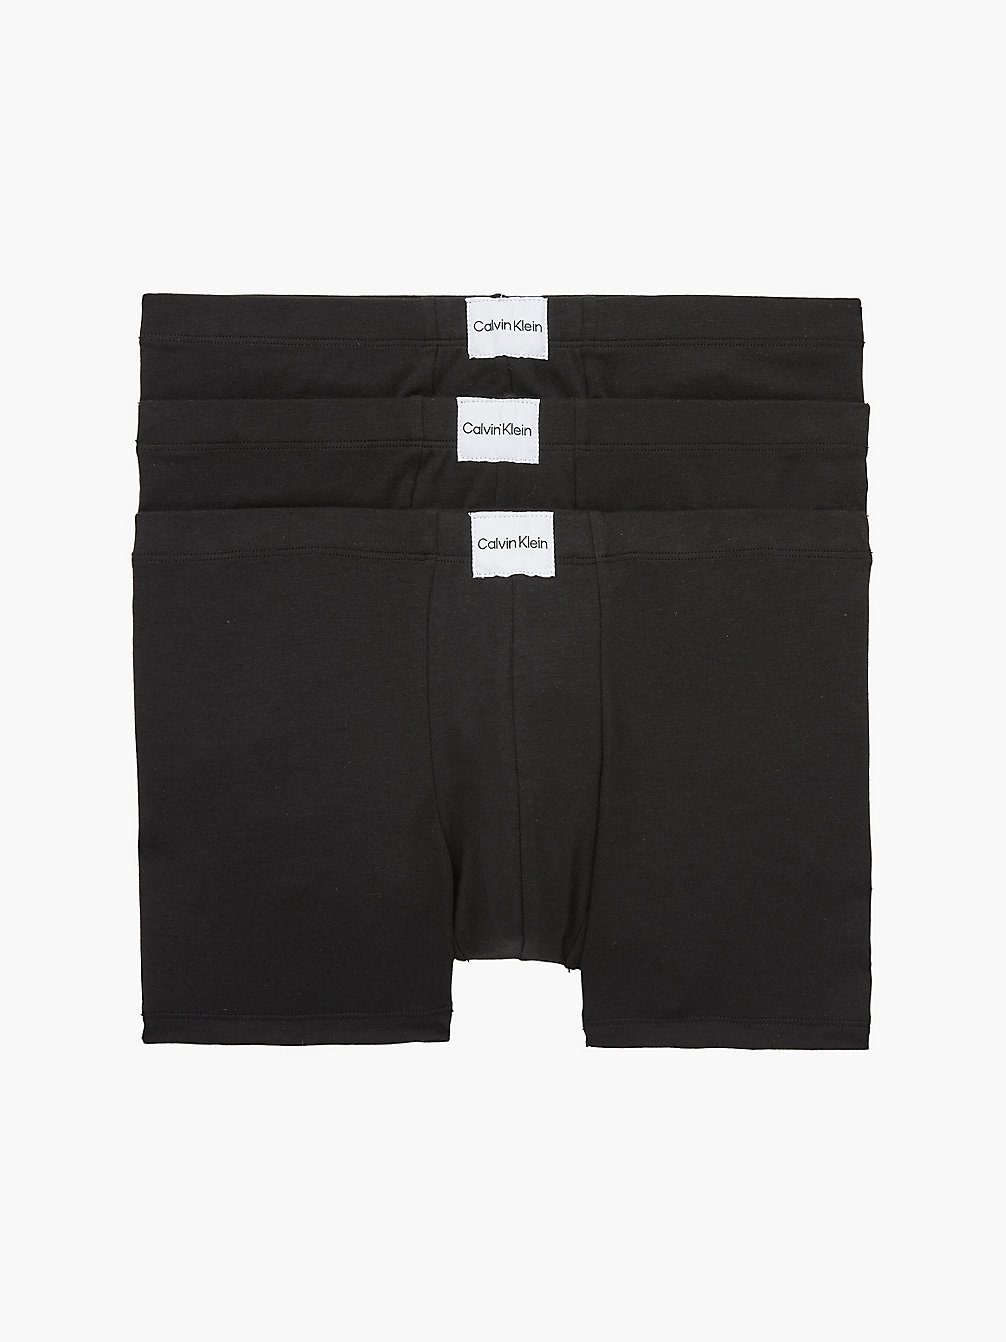 BLACK/ BLACK/ BLACK Lot De 3 Boxers - Pure Cotton undefined hommes Calvin Klein